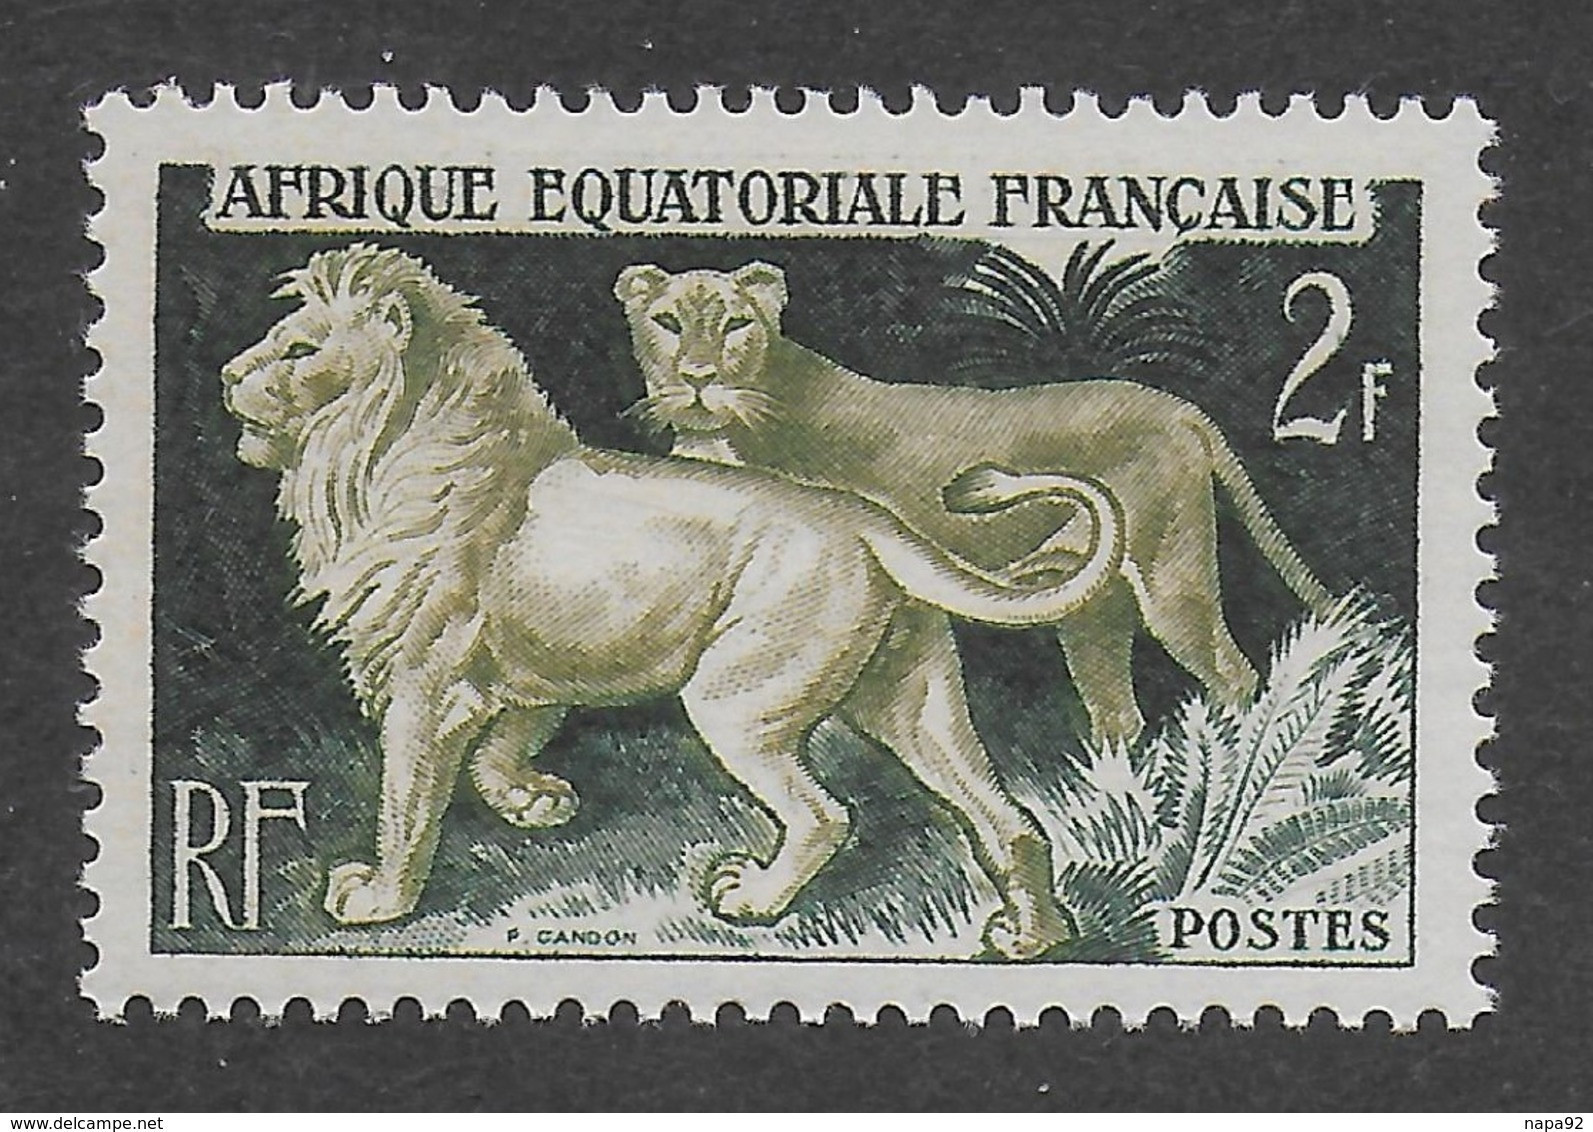 AFRIQUE EQUATORIALE FRANCAISE - AEF - A.E.F. - 1957 - YT 239** - MNH - Ungebraucht